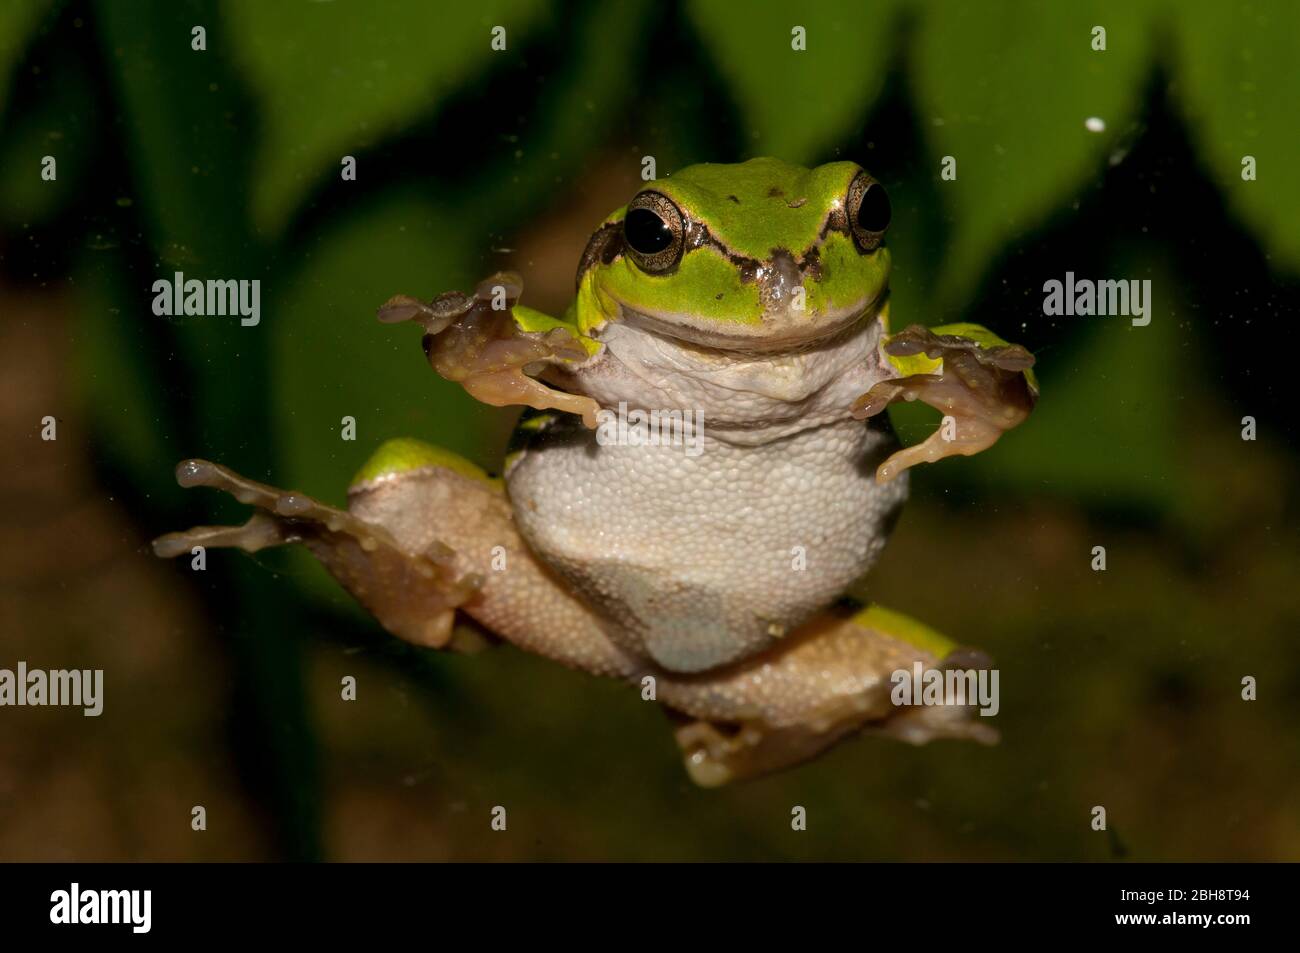 Tree Frog, sitting on glass, Hyla arborea, Hylidae, Bavaria, Germany Stock Photo